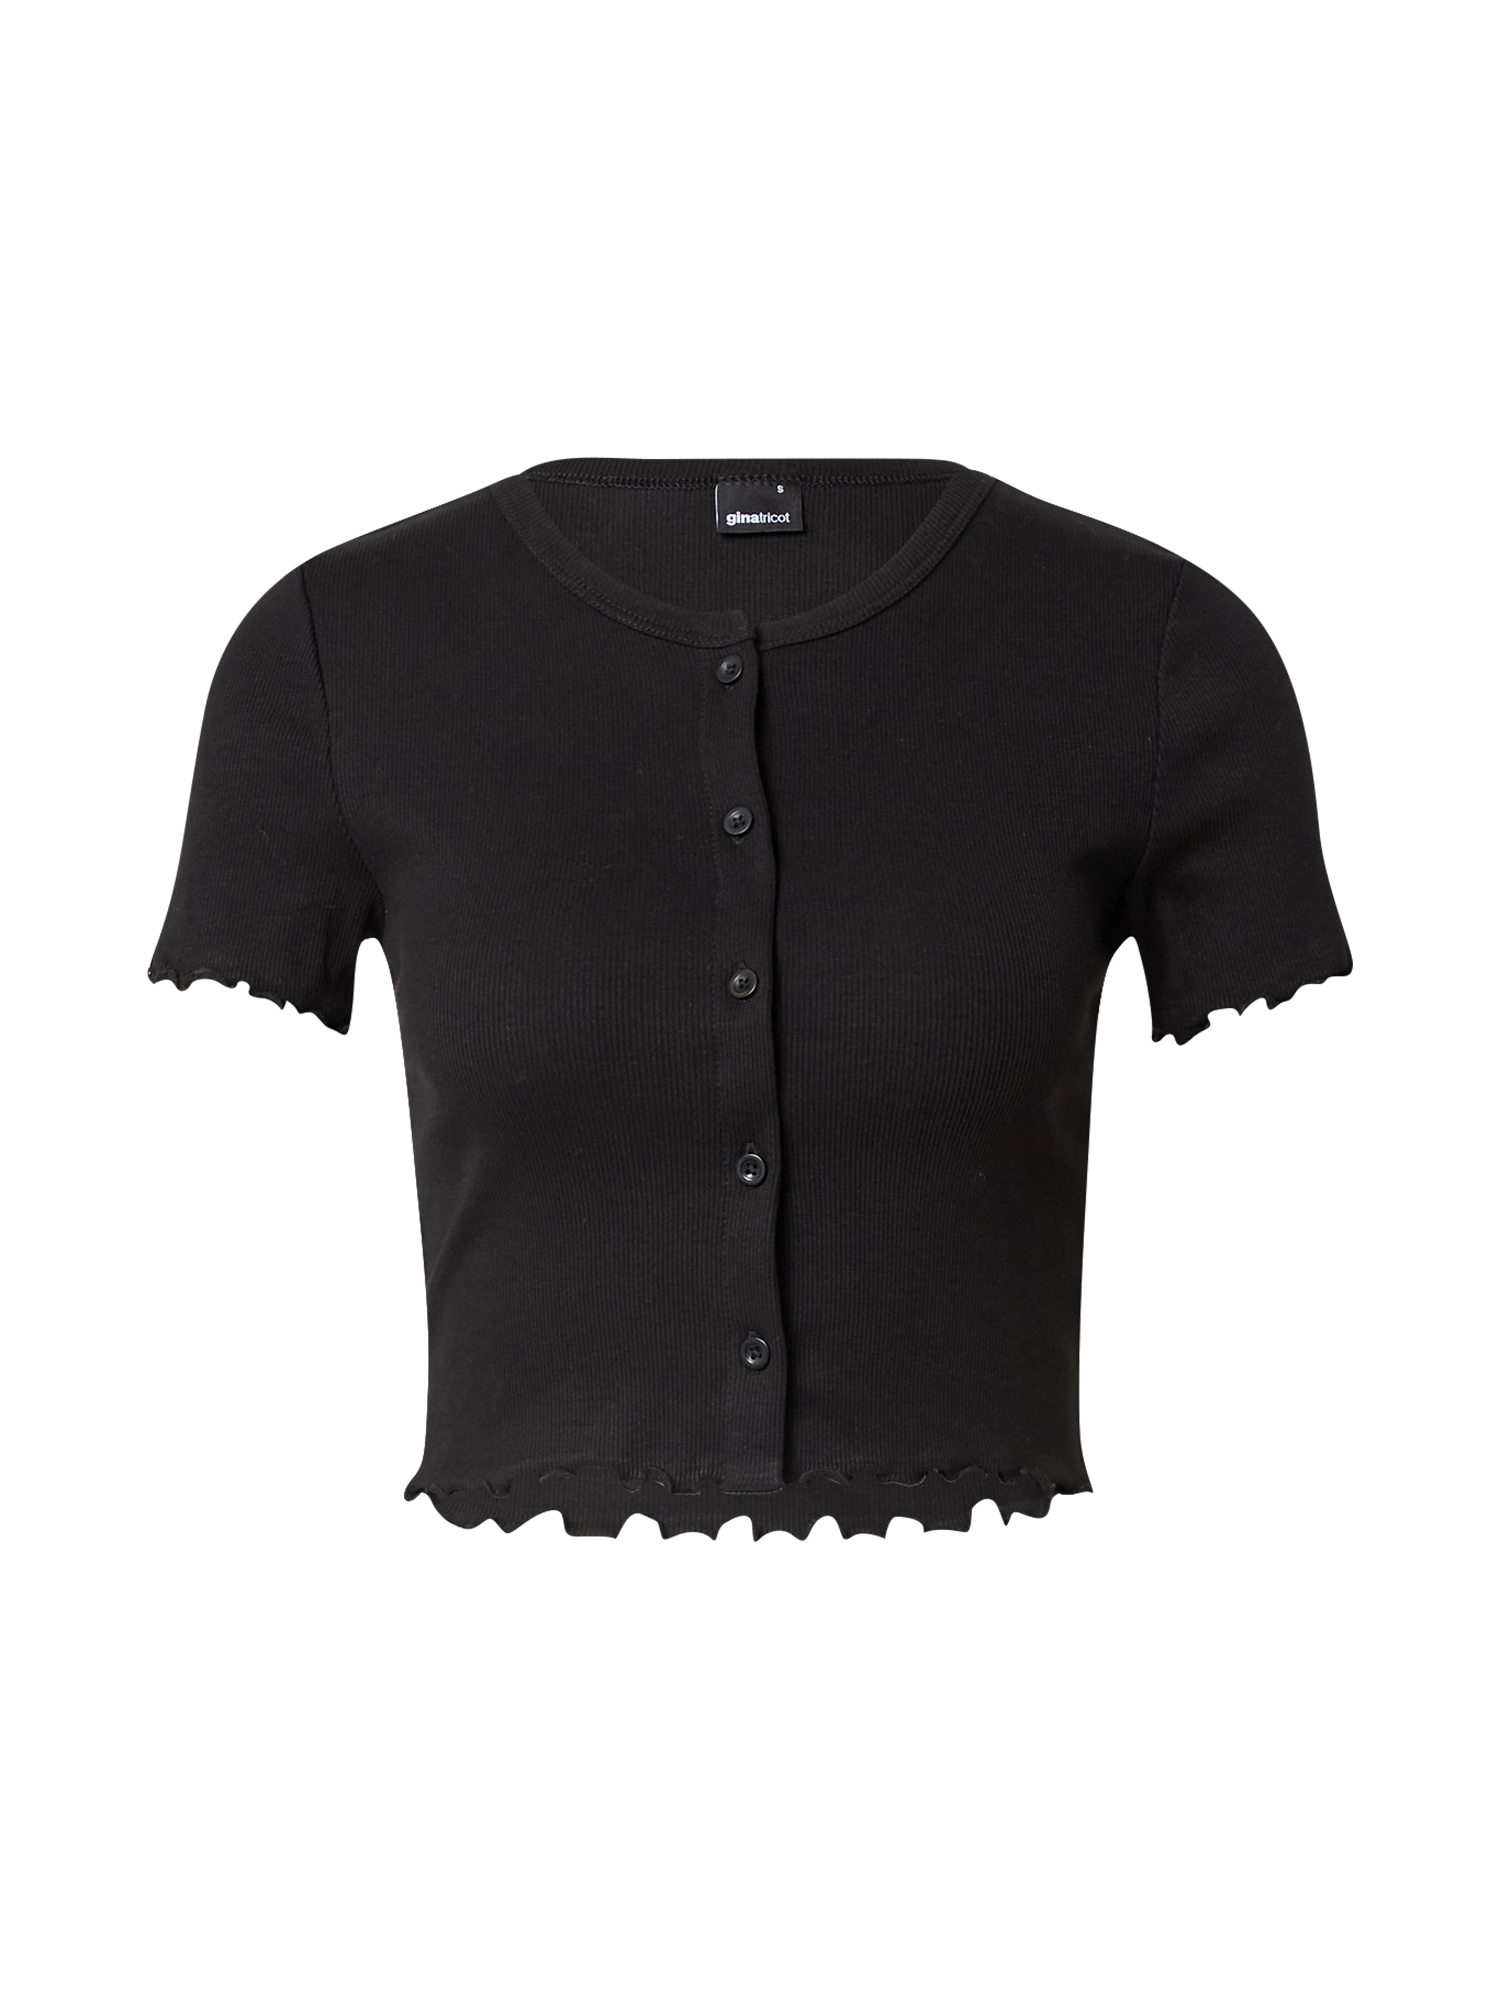 Kobiety Koszulki & topy Gina Tricot Koszulka Cissi w kolorze Czarnym 